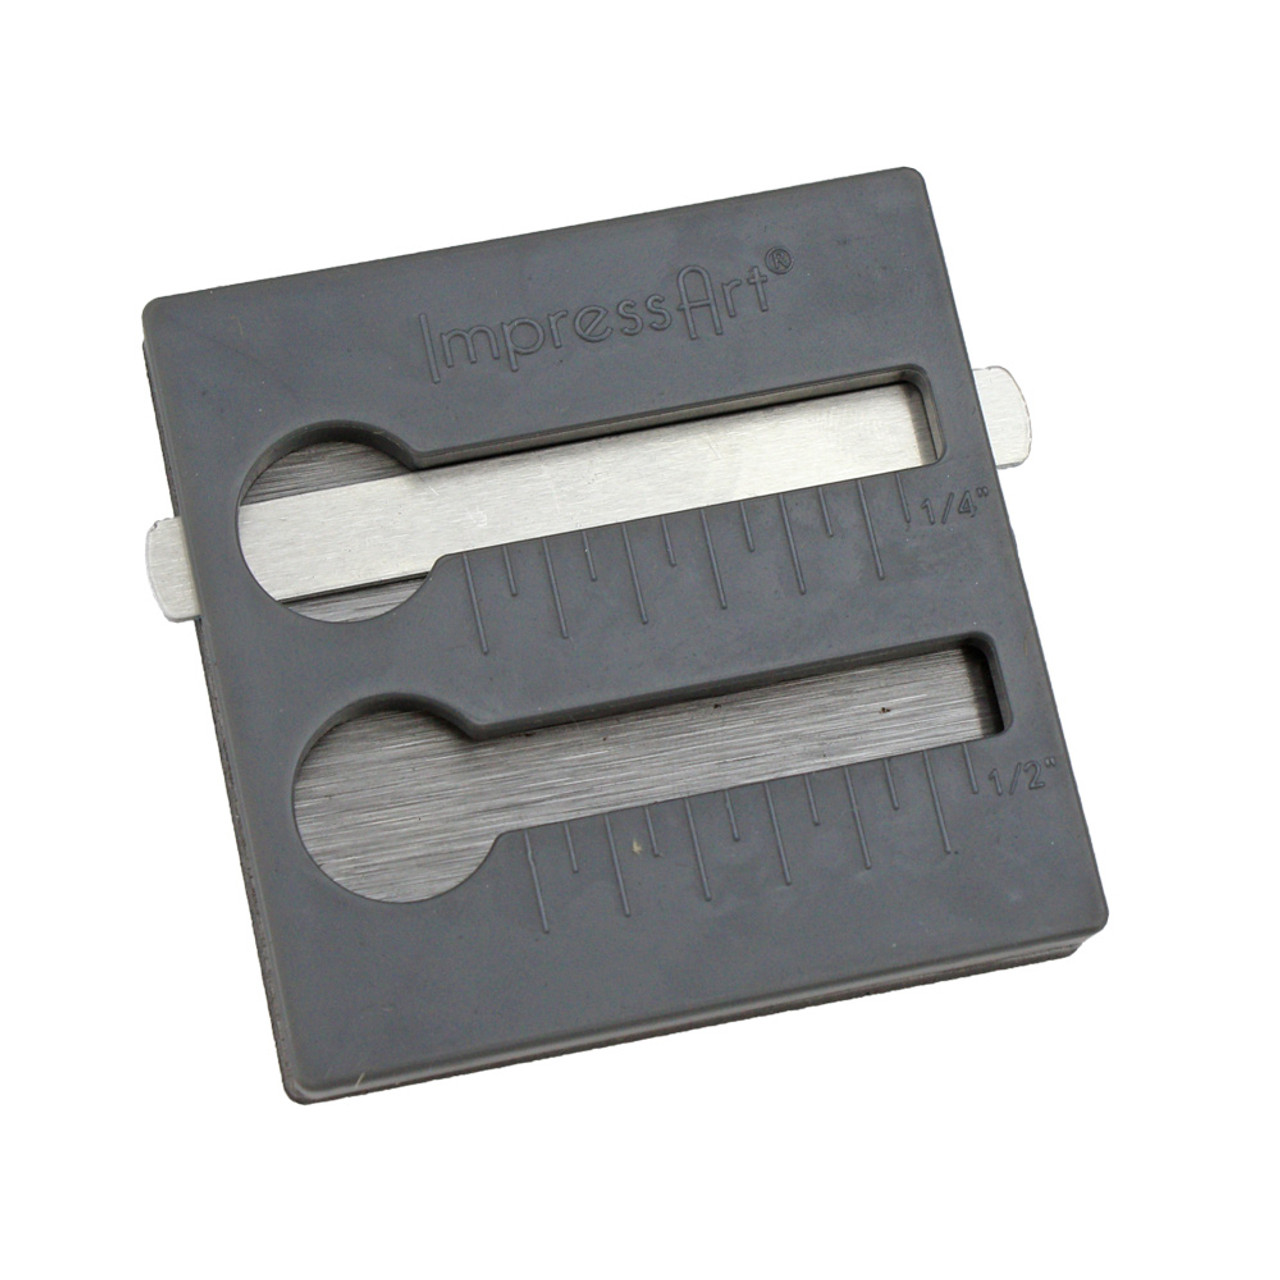 ImpressArt Bracelet Stamp Straight Jig, Bracelet Stamping Aid Tool